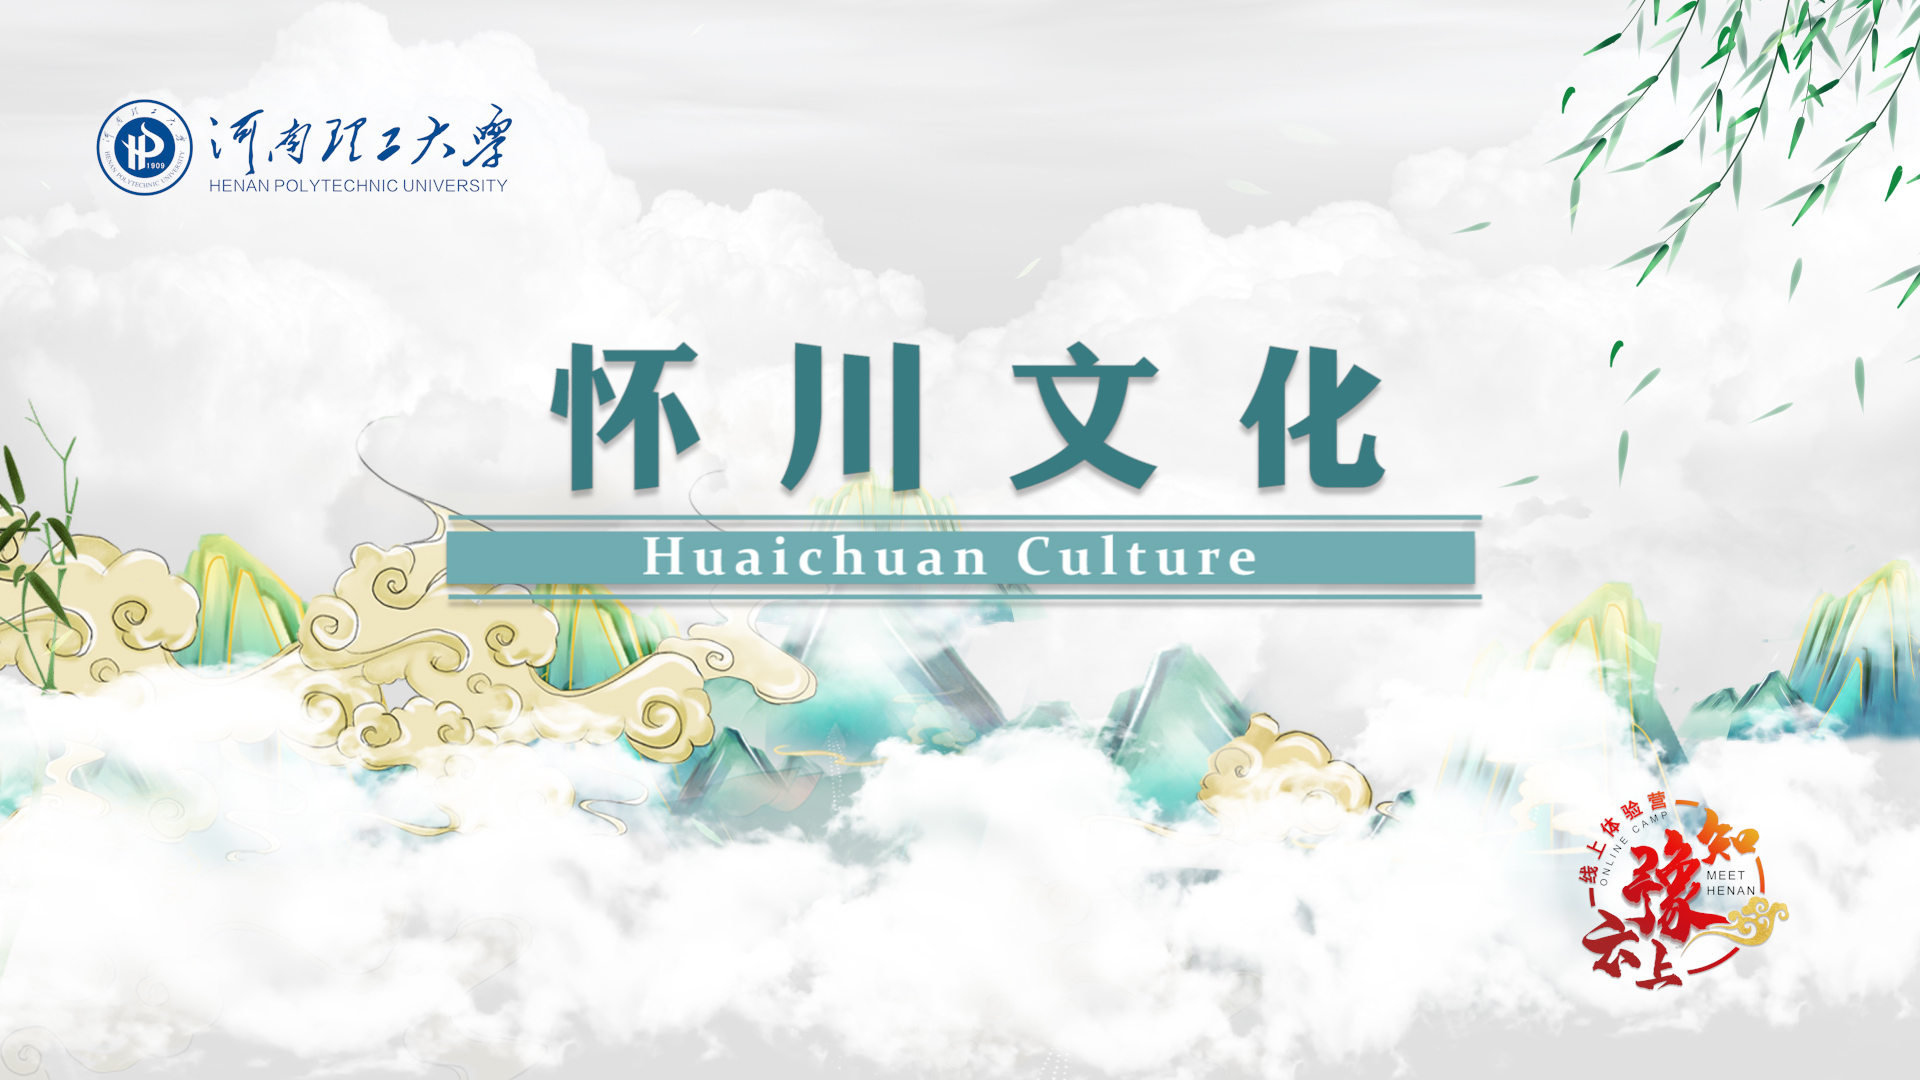 Jiaozuo and Huaichuan Culture